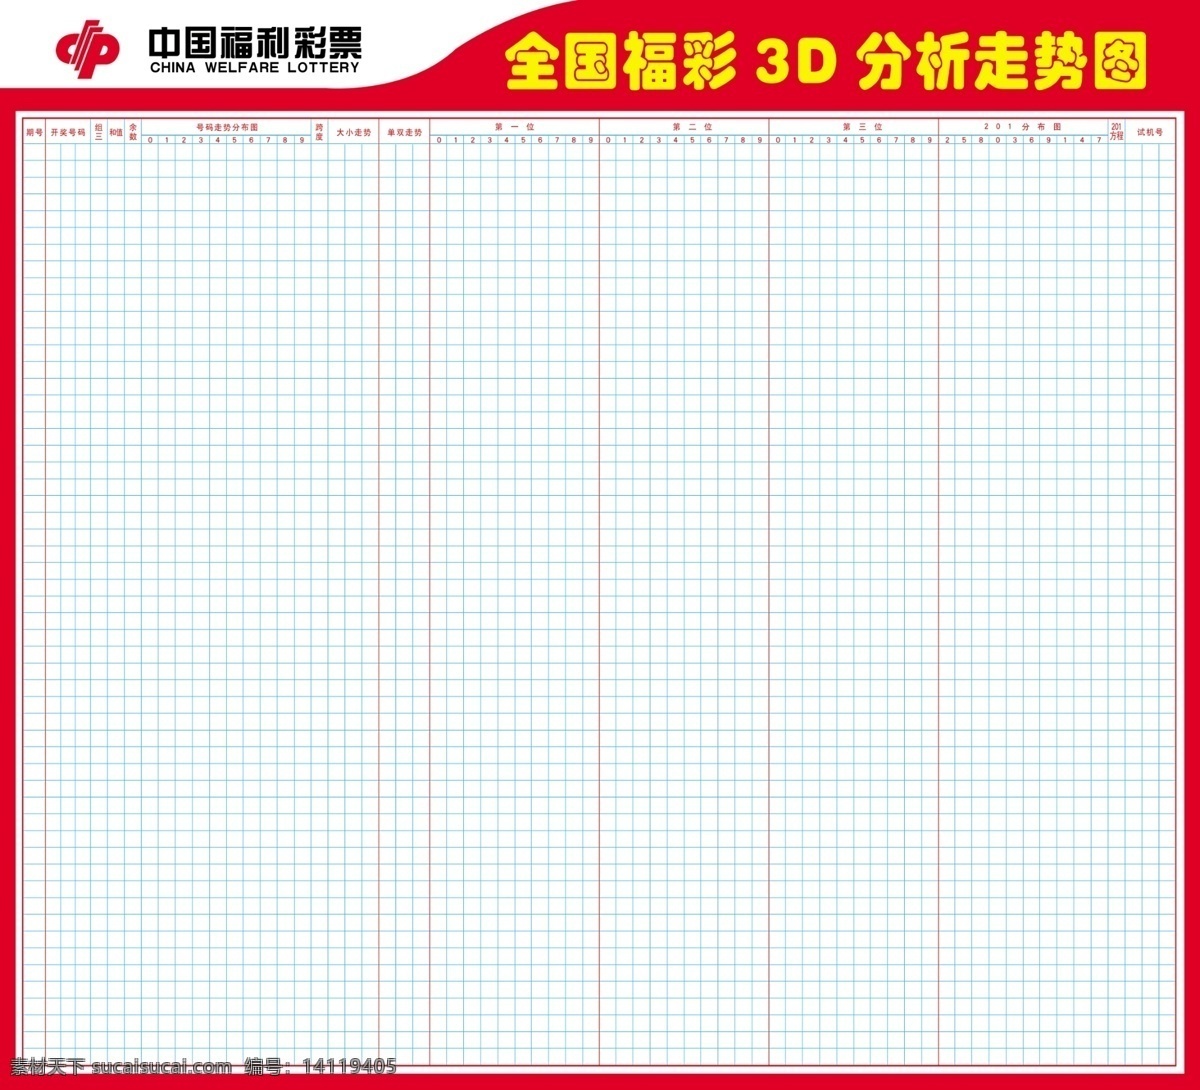 3d 表格 分析 福彩 广告设计模板 广告宣传 源文件 展板模板 走势图 模板下载 中国 体育彩票 标志 psd源文件